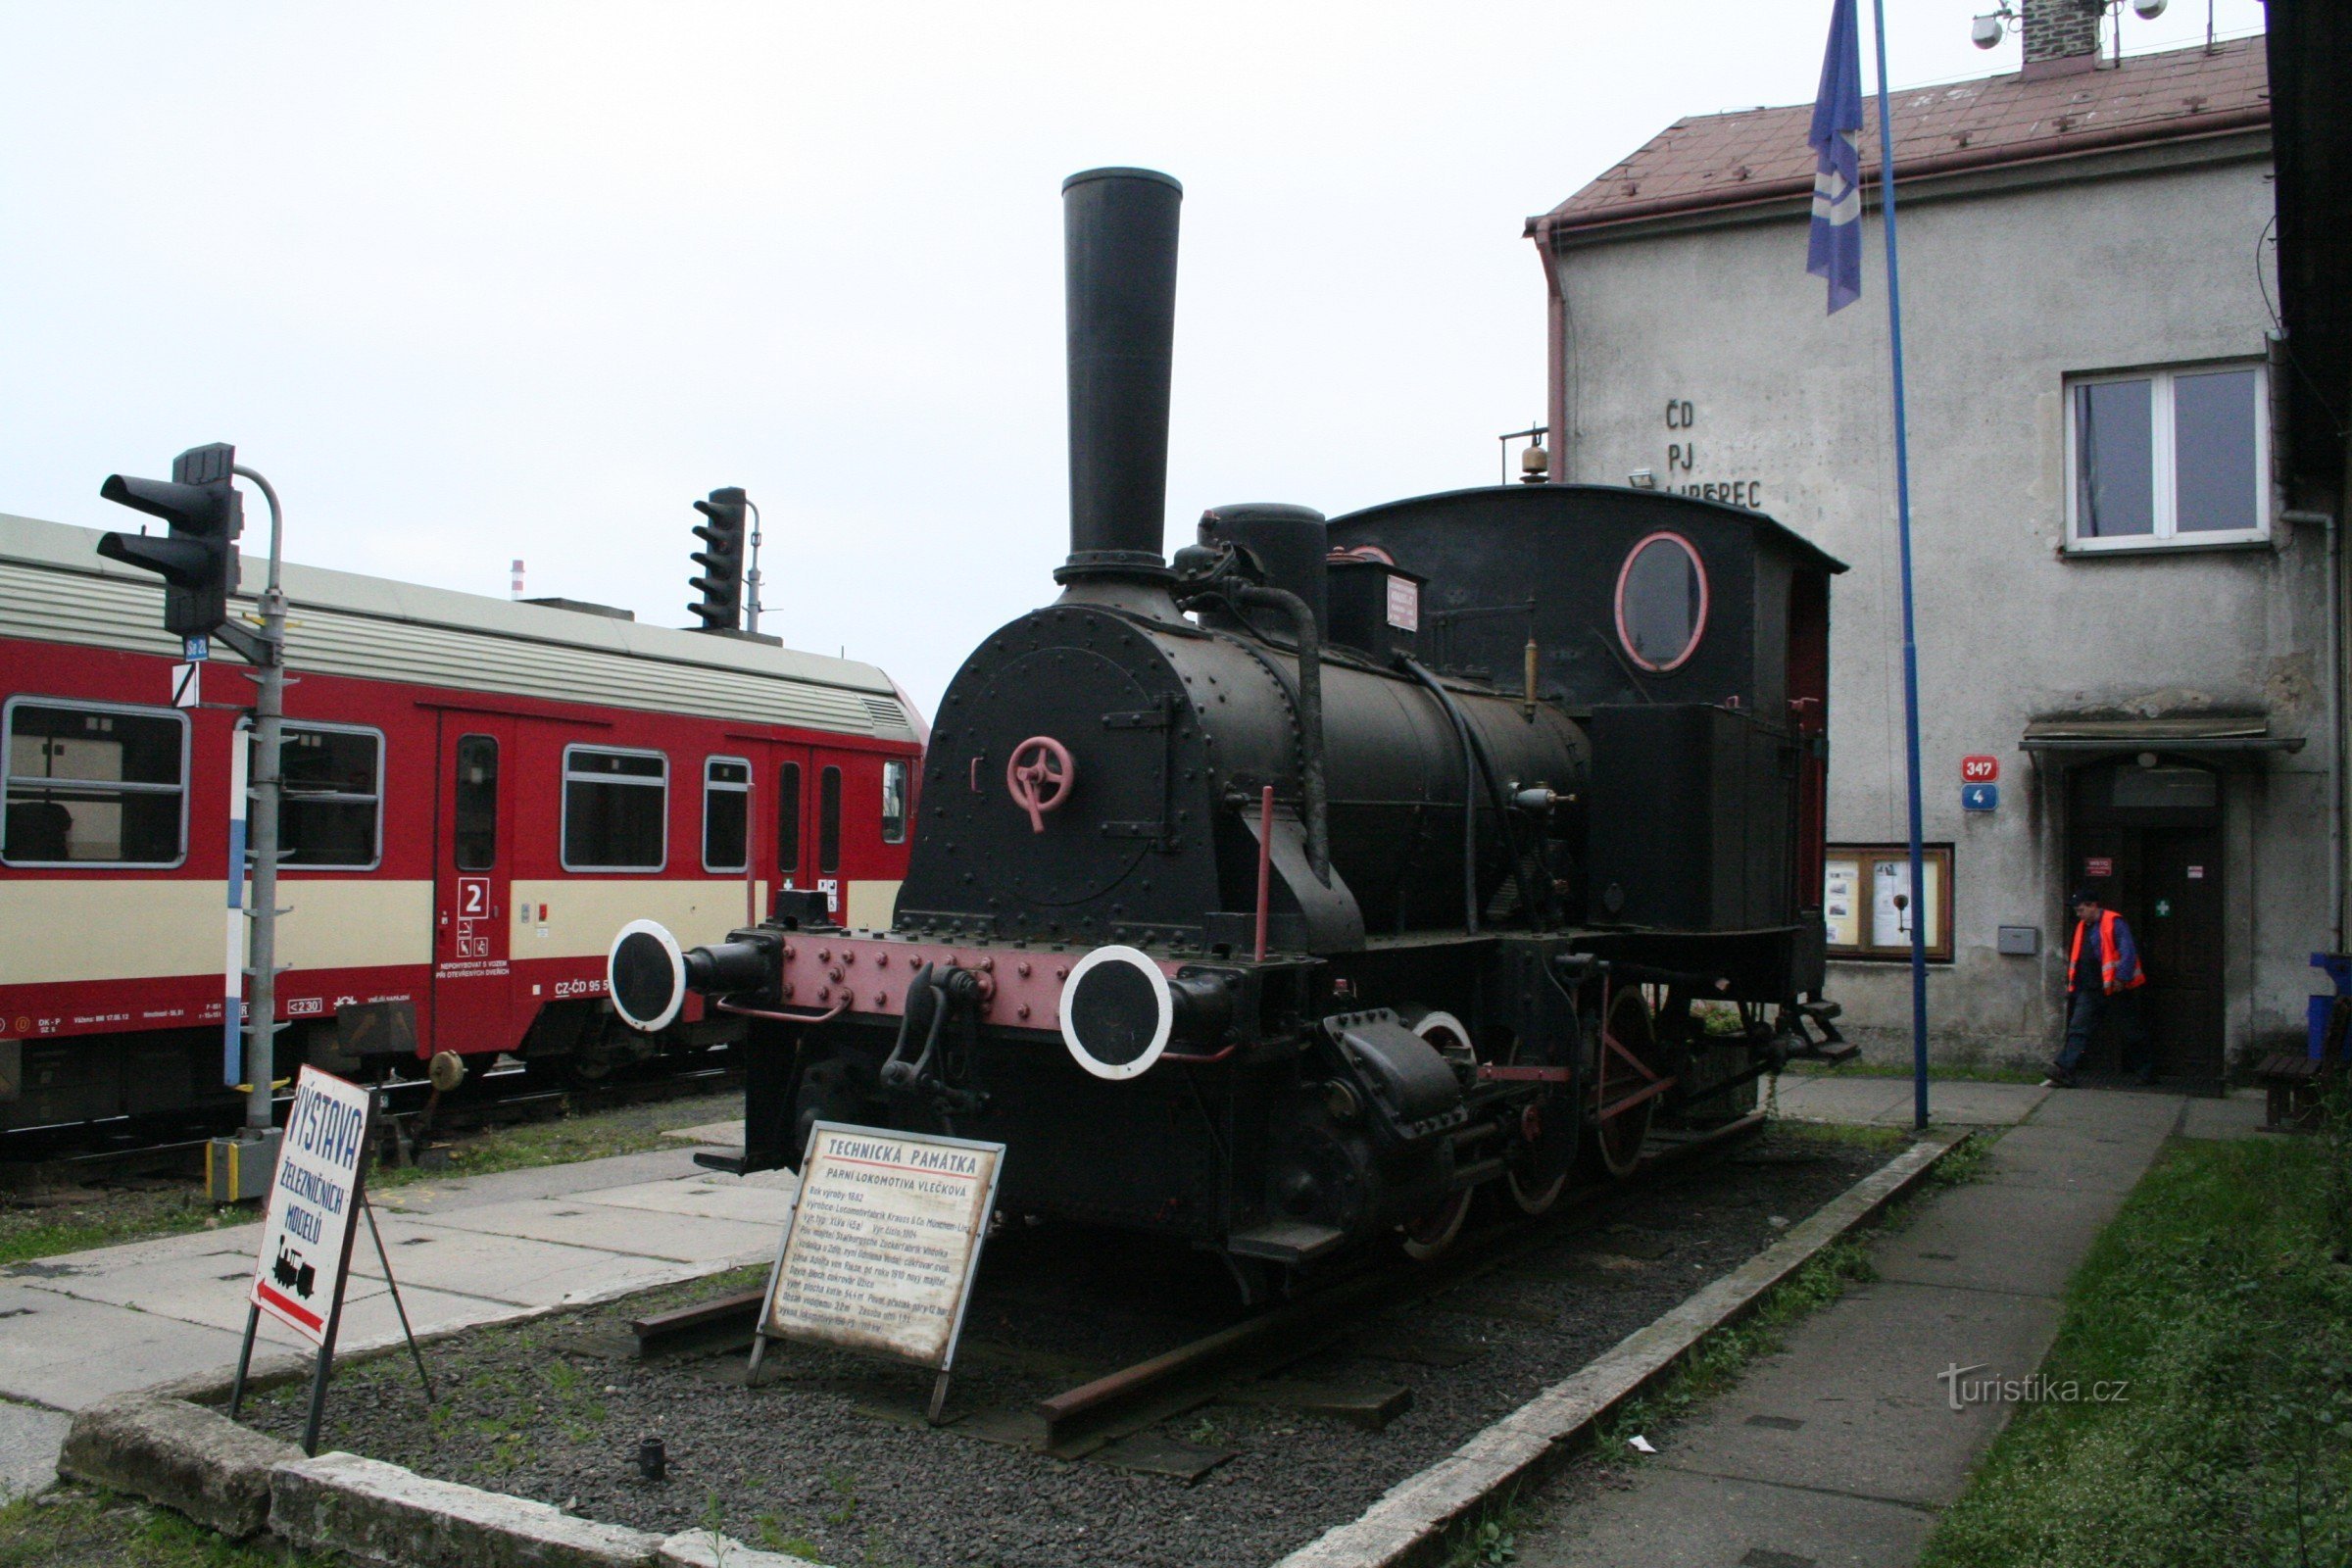 Monumento ferroviario - locomotora de vapor Adolf